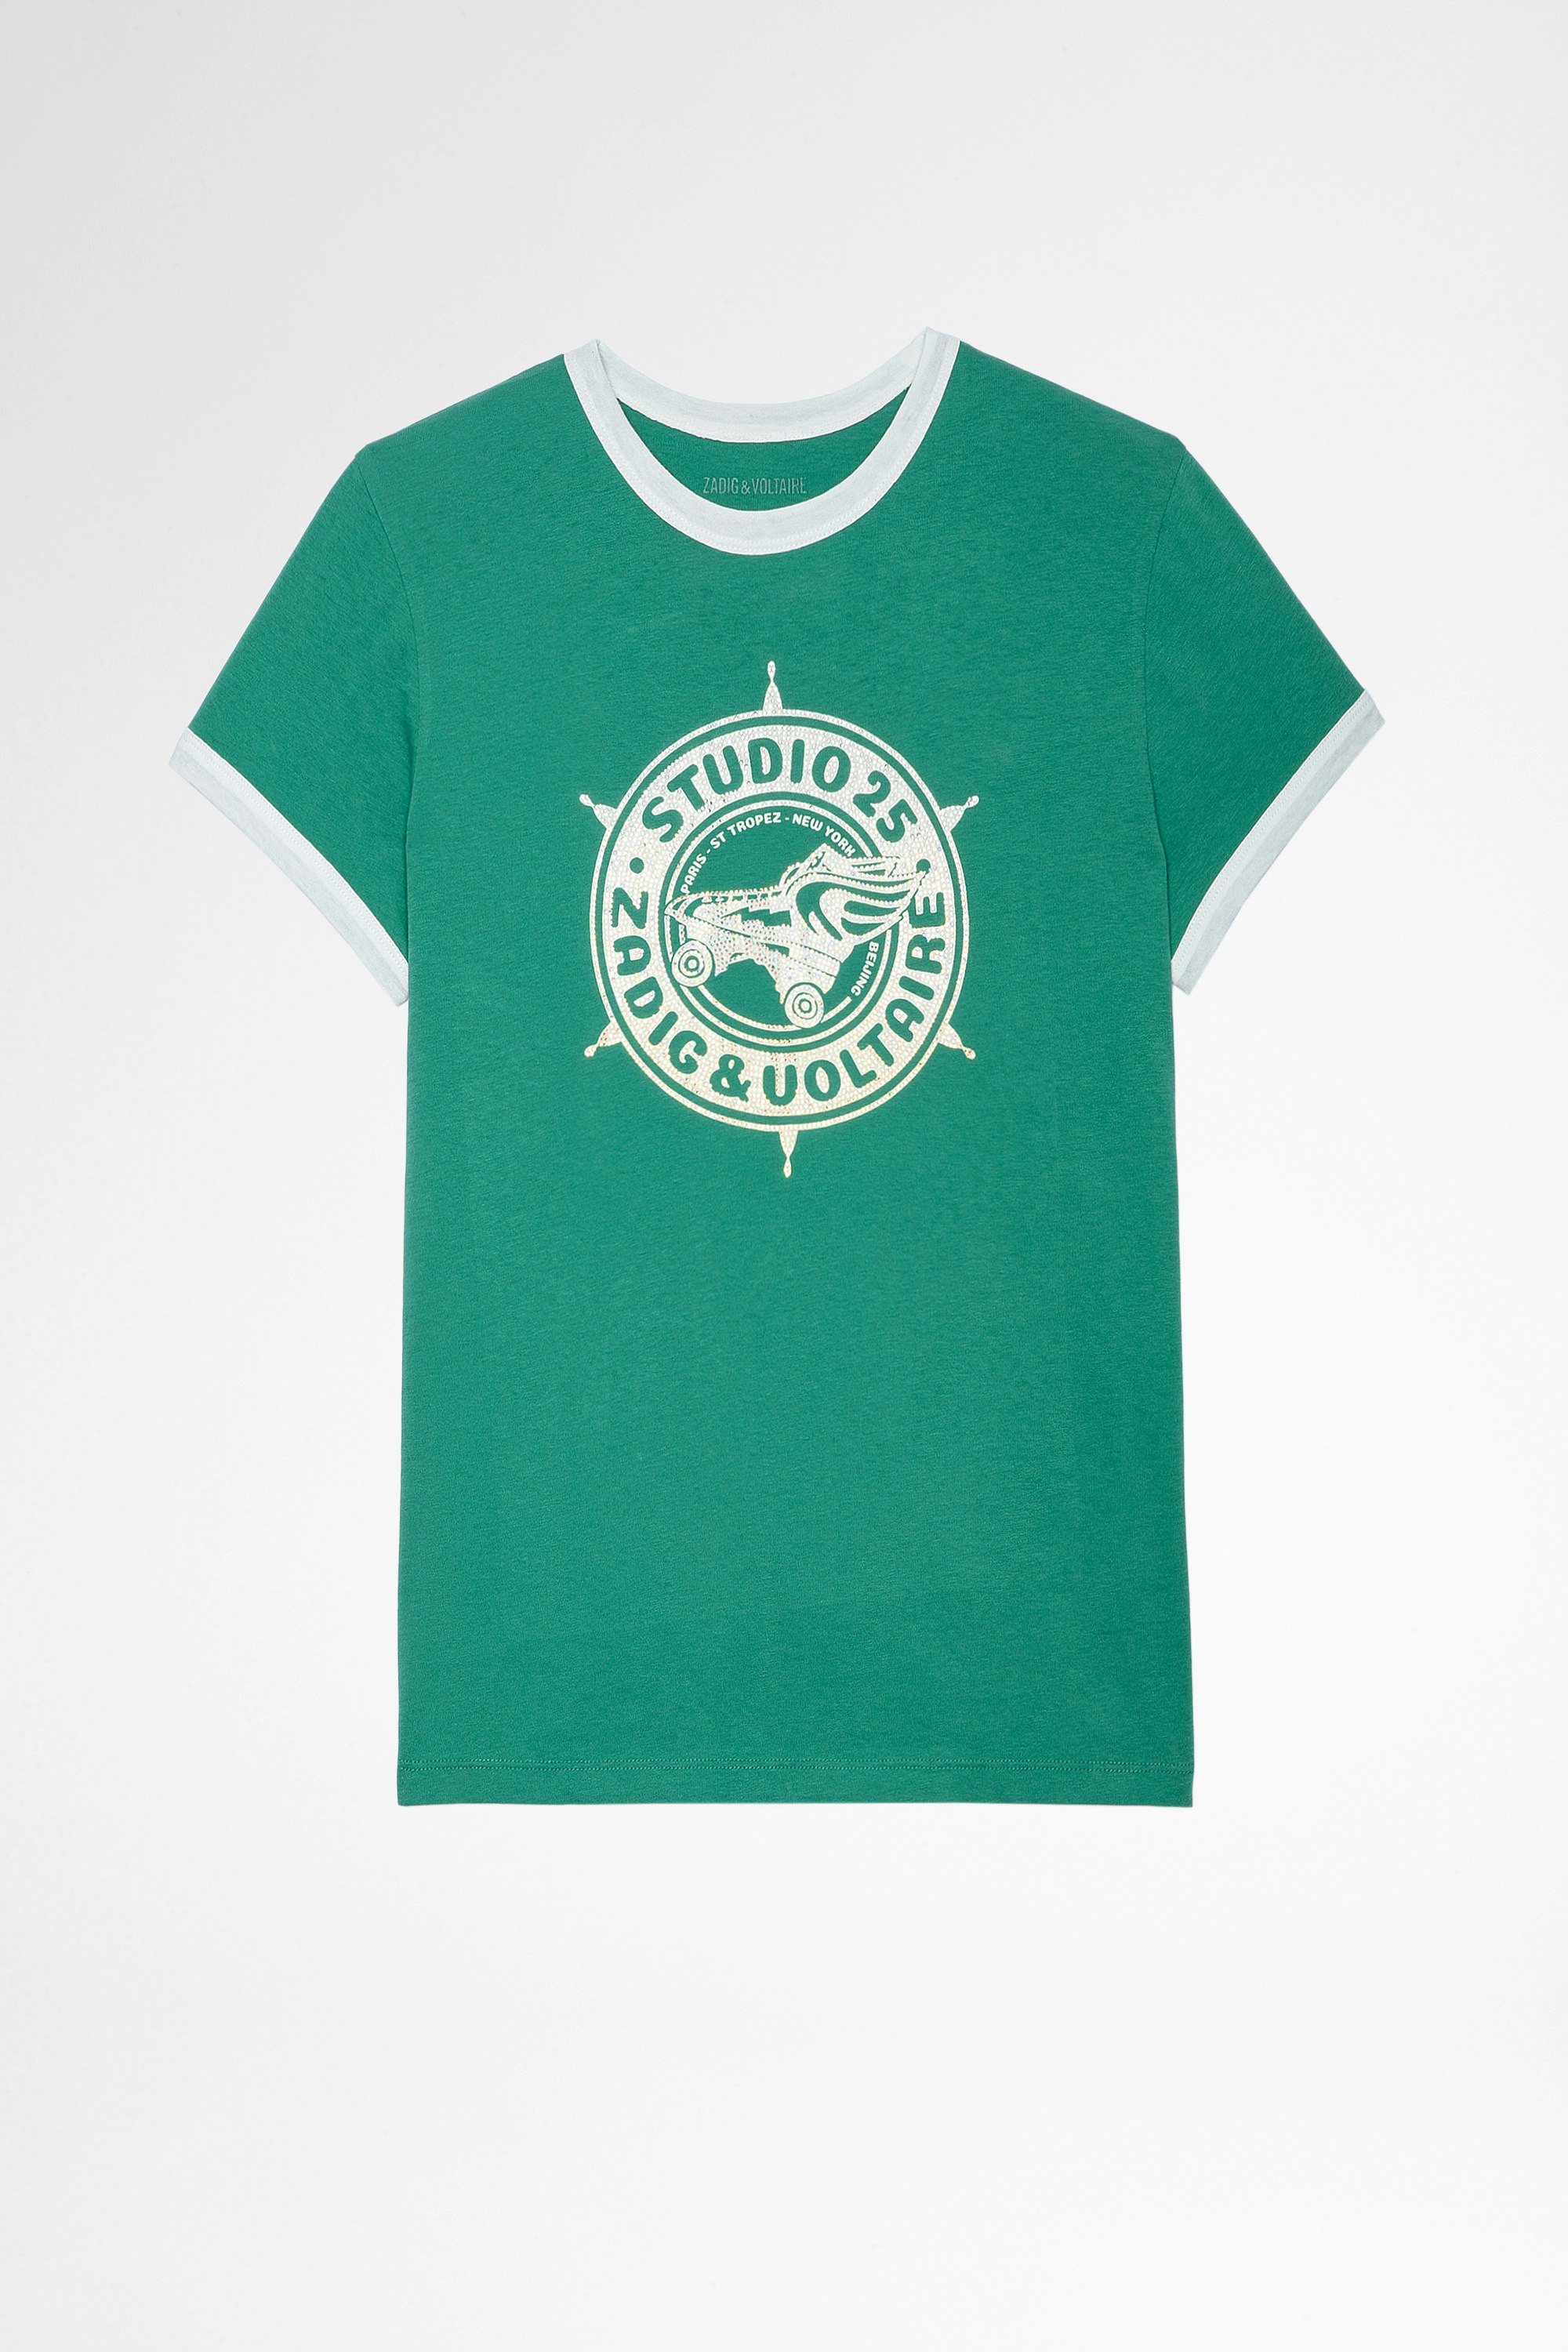 T-shirt Zoe Studio 25 Strass T-shirt in cotone verde con stampa Studio 25 ricoperta di cristalli donna